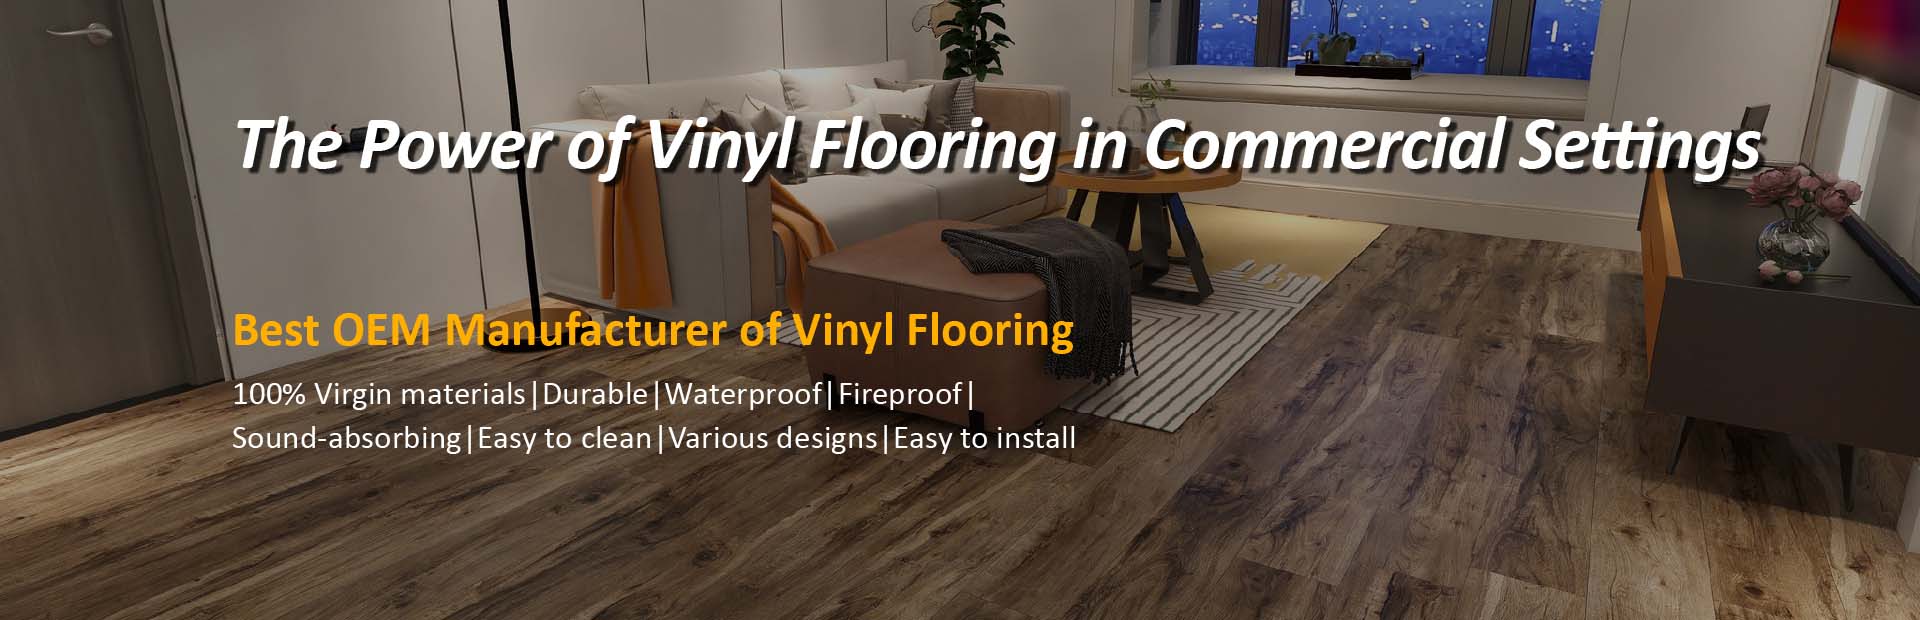 OEM Fabrikant vu Vinyl Flooring